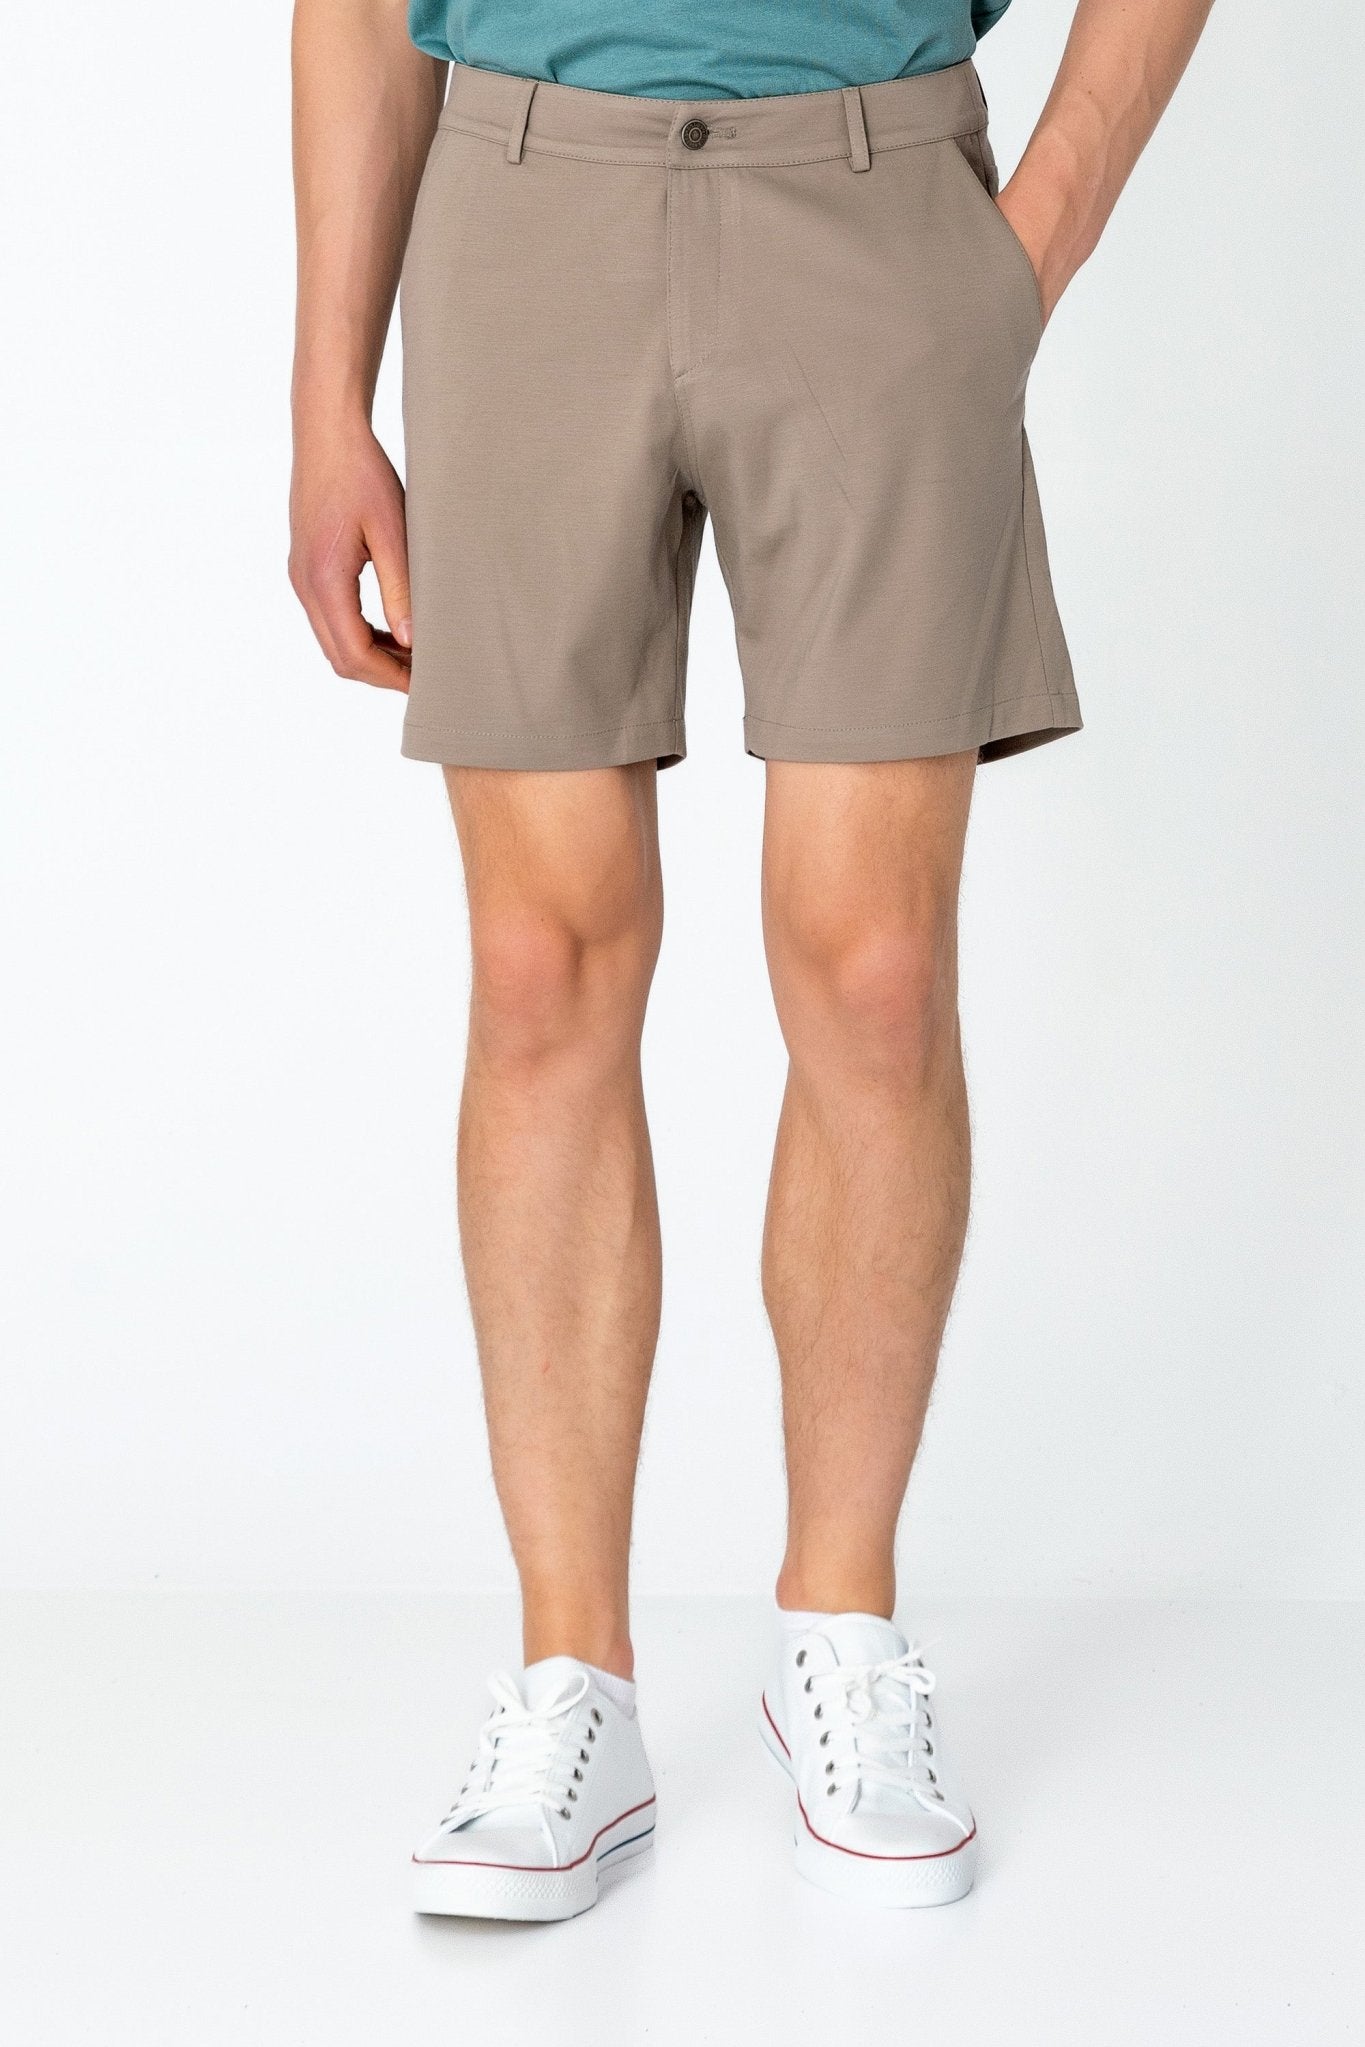 Side Pocket Lightweight Shorts - Sand - Ron Tomson